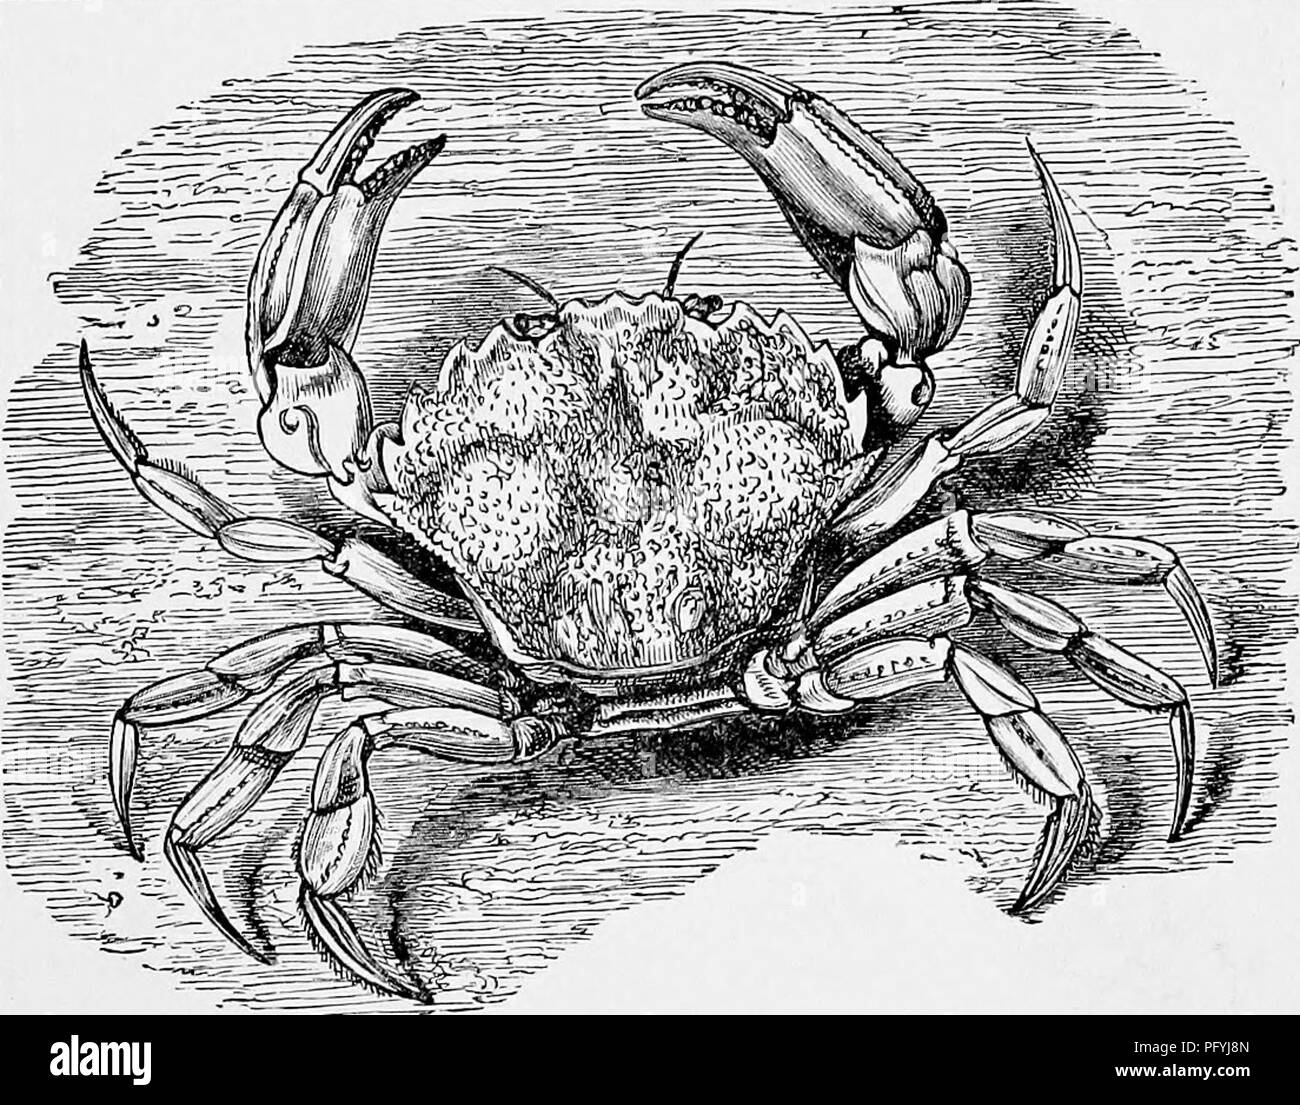 . L'histoire naturelle populaire . Zoologie. Natation LES CRABES. 56S montré dans l'illustration, alors que dans l'autre l'Araignée-crabe est illustré de- nuded de ces appendices. La grande famille de l'Canceridae vient maintenant devant nous, et est famiharly connu par l'intermédiaire de la politique commune de crabe. C'est une espèce commune, étant très nombreux autour de nos côtes rocheuses, et généralement reste dans la zone juste en dessous de basse mer. Le poisson"r- hommes attraper de différentes manières ; mais la méthode la plus usuelle, et celle par laquelle le plus grand nombre de ces crustacés sont capturés, est à l'aide de certains paniers, ca Banque D'Images